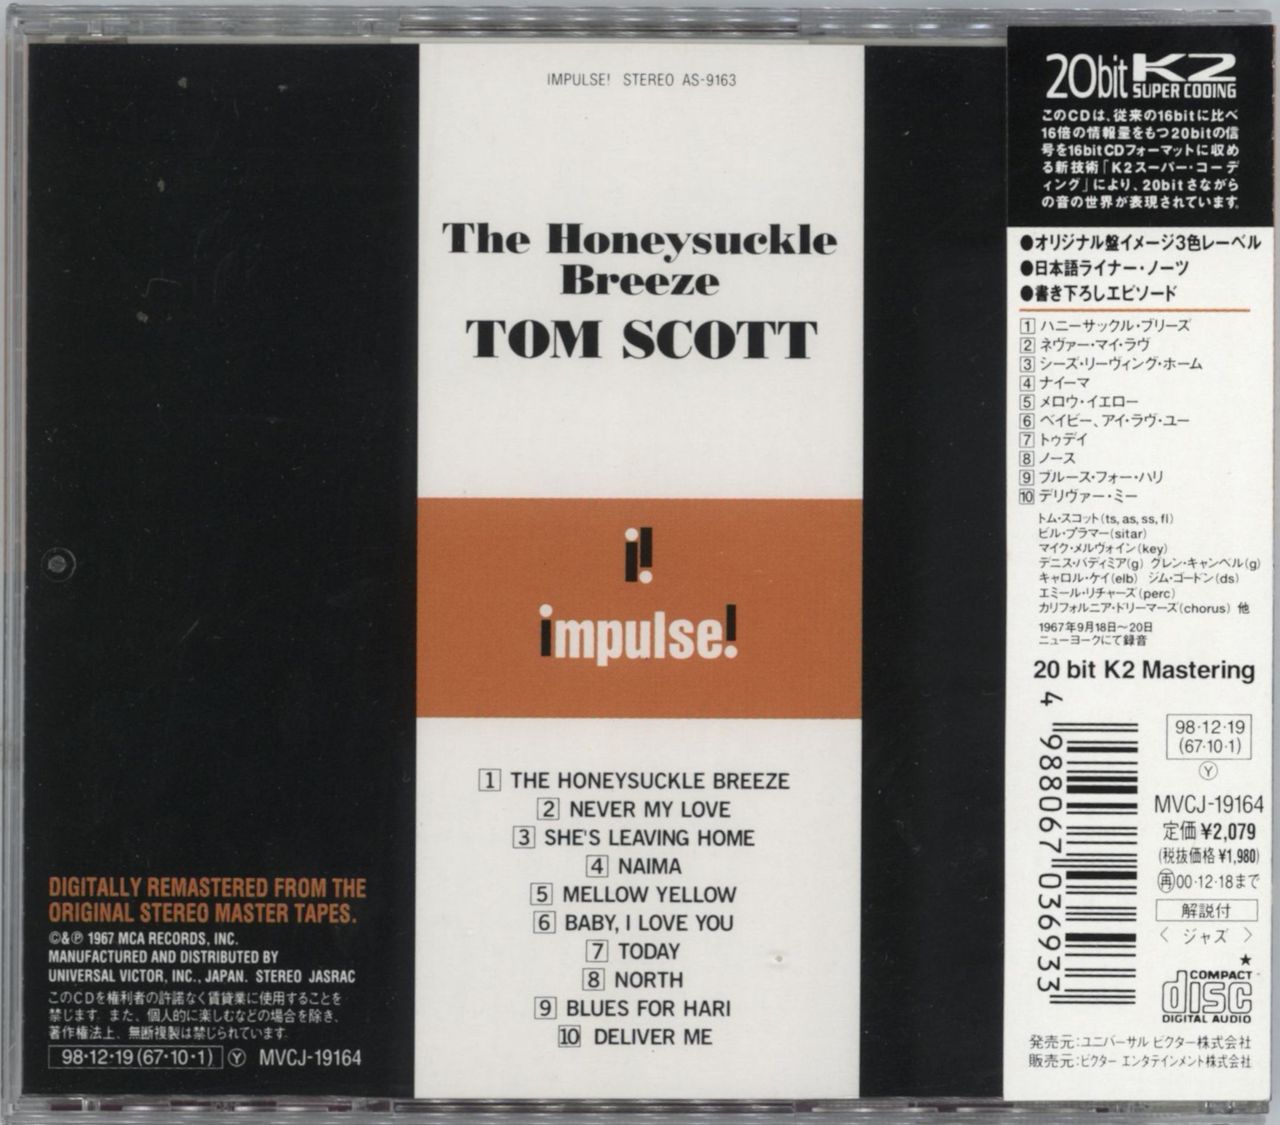 Tom Scott The Honeysuckle Breeze Japanese CD album — RareVinyl.com